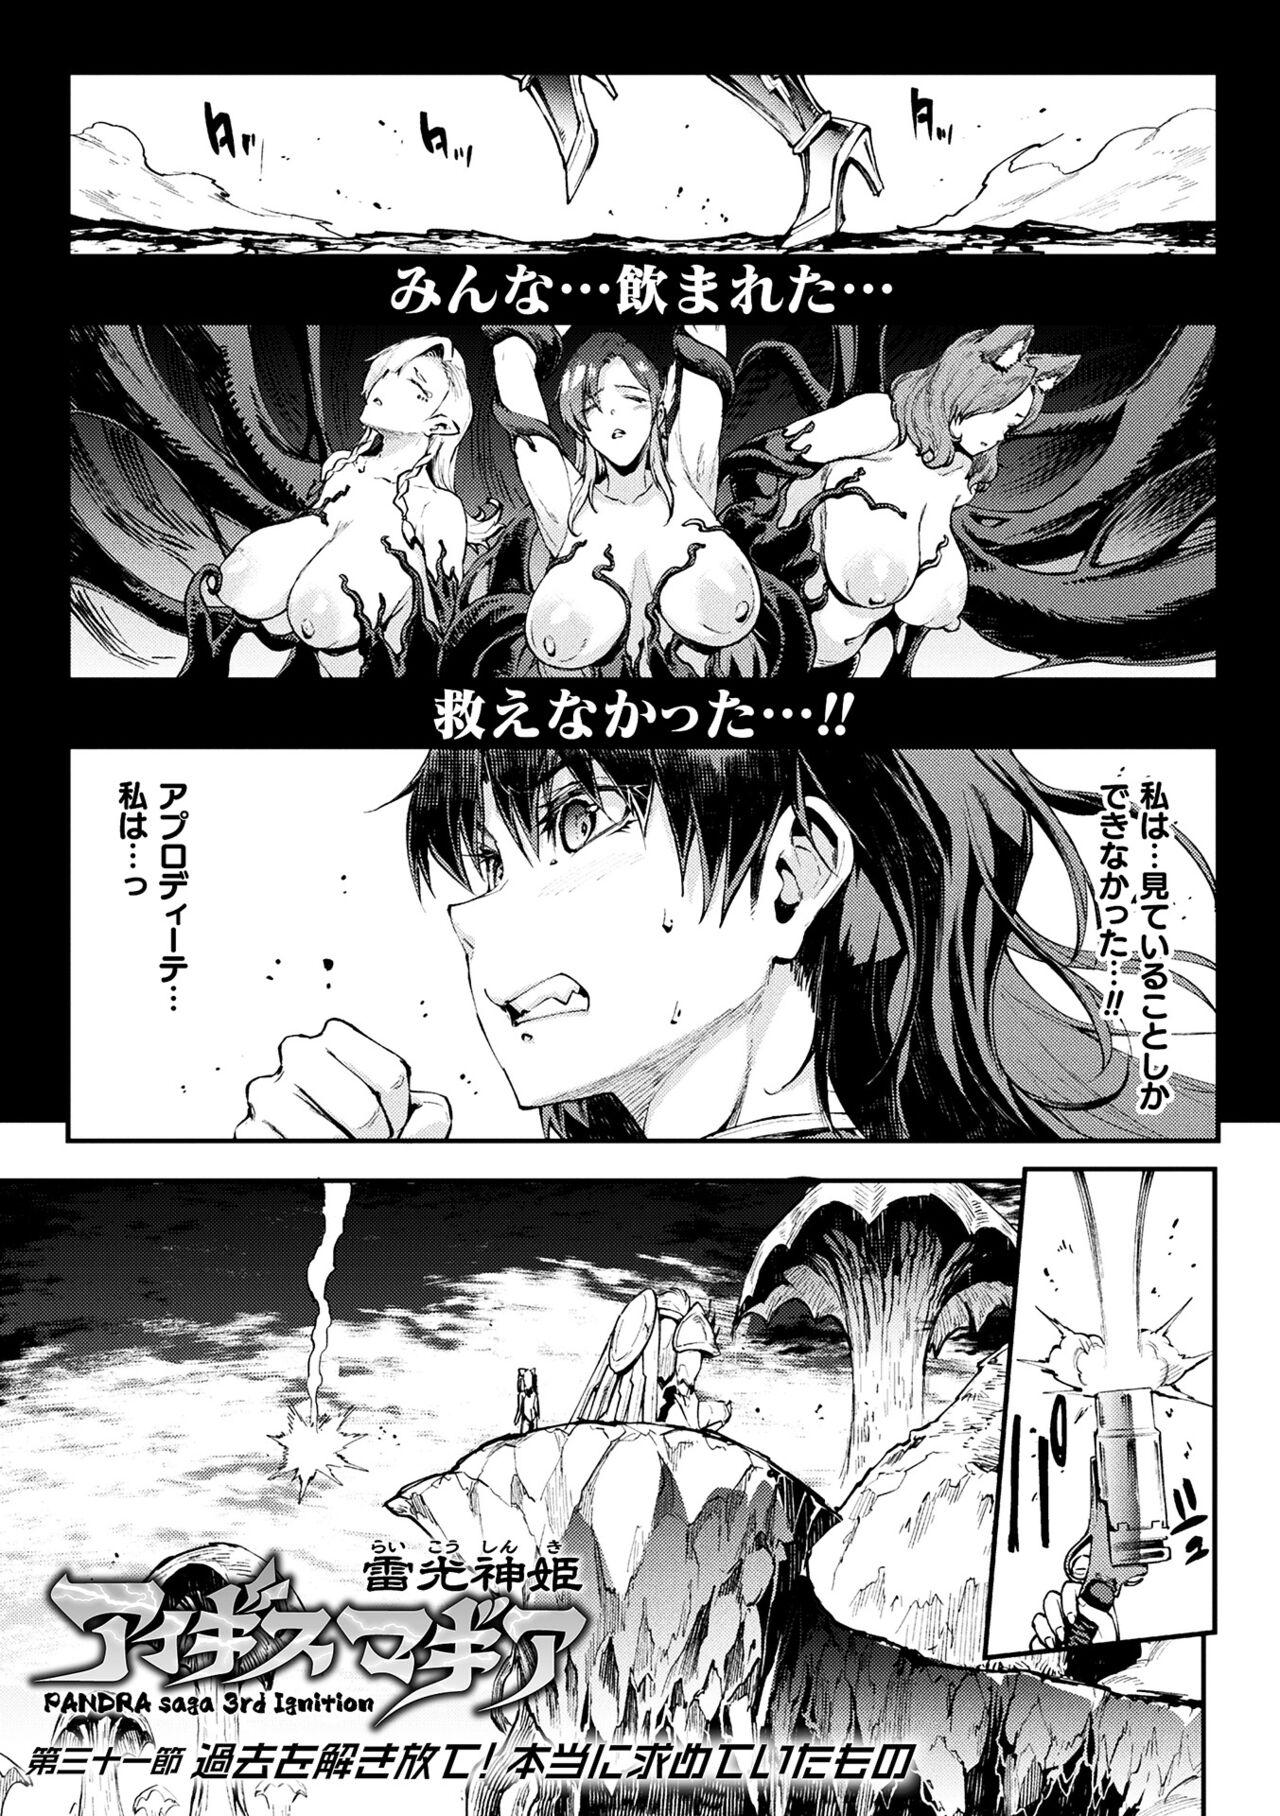 [Erect Sawaru] Raikou Shinki Igis Magia III -PANDRA saga 3rd ignition- 4 [Digital] 124